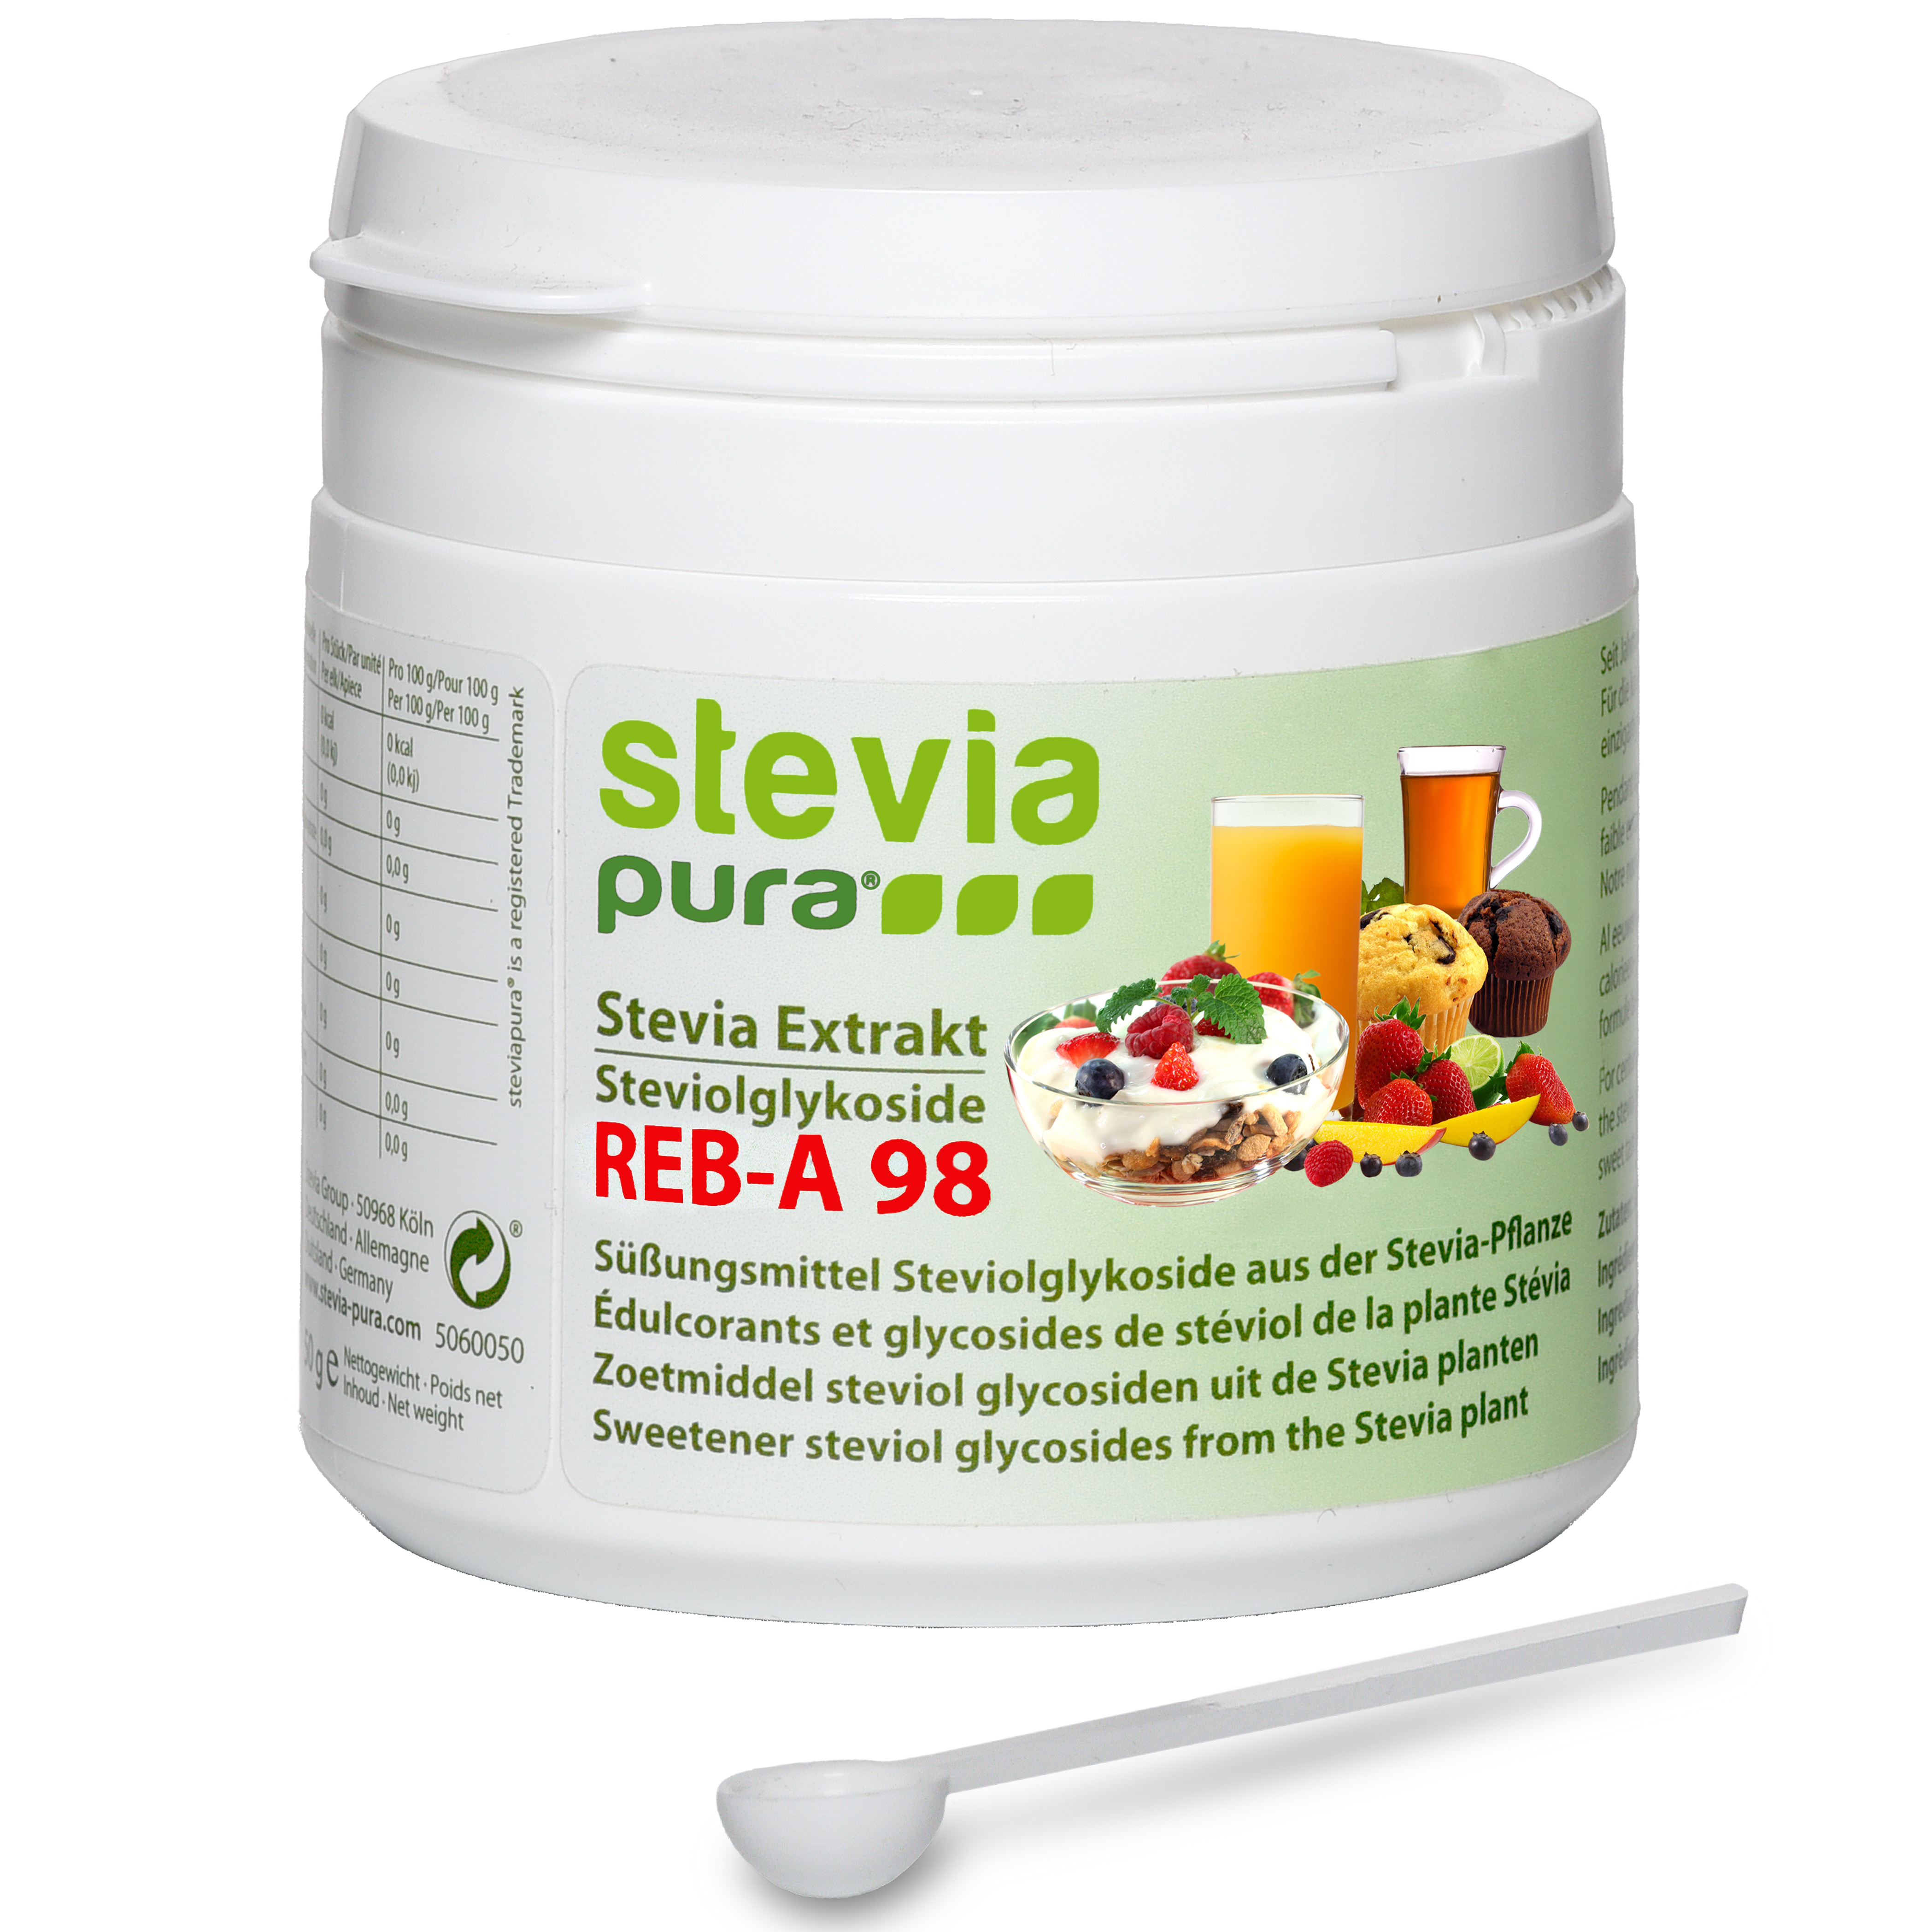 Stevia Pulver rein und bitterfrei kaufen Steviosid-Extrakt ohne Zucker